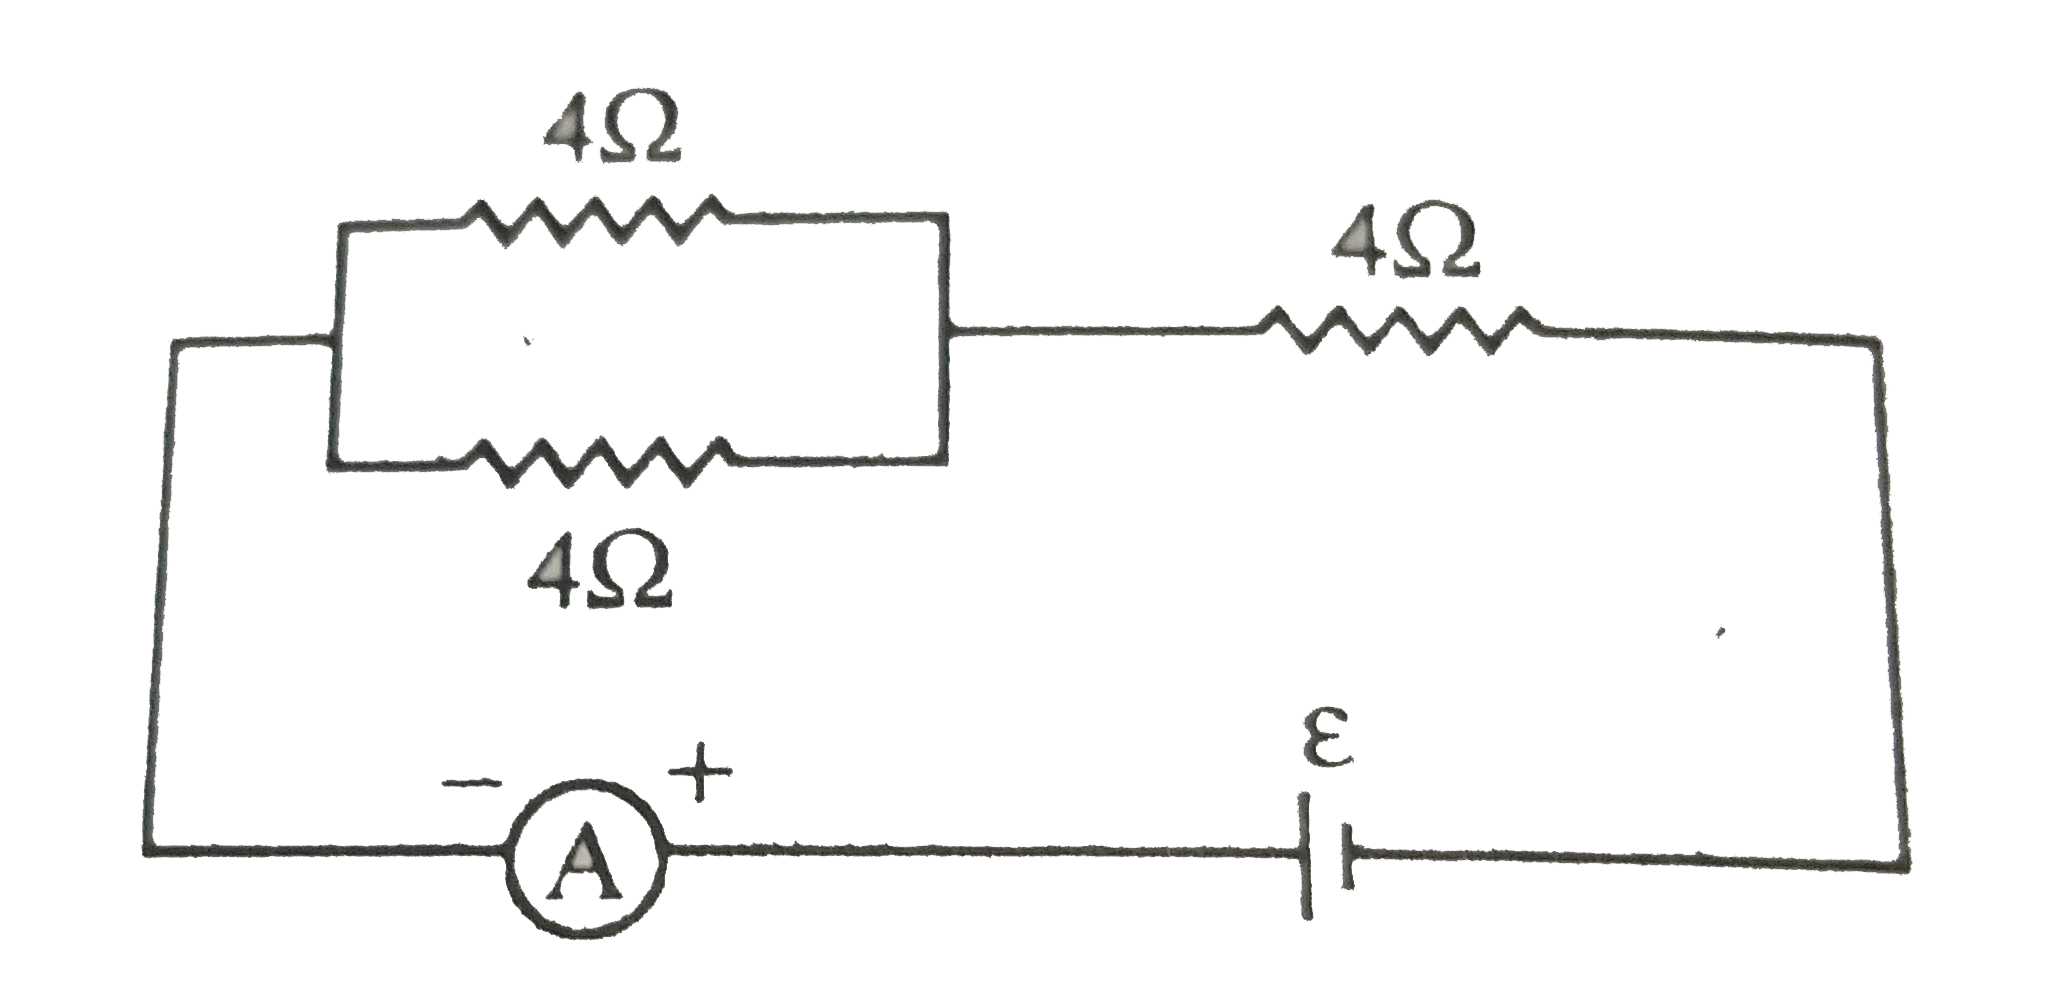 चित्र में दर्शाए अनुसार प्रतिरोधों R और S के लिए मित्र सेतु में l(1) दूरी पर संतुलन बिंदु प्राप्त होता है। जब प्रतिरोधक के साथ समांतर क्रम में अज्ञात प्रतिरोध X को संयोजित किया जाता है तो संतुलन बिंदु l(2) दूरी पर हट जाता है। l(1),l(2) और S के पदों में X के लिए व्यंजक ज्ञात कीजिए।